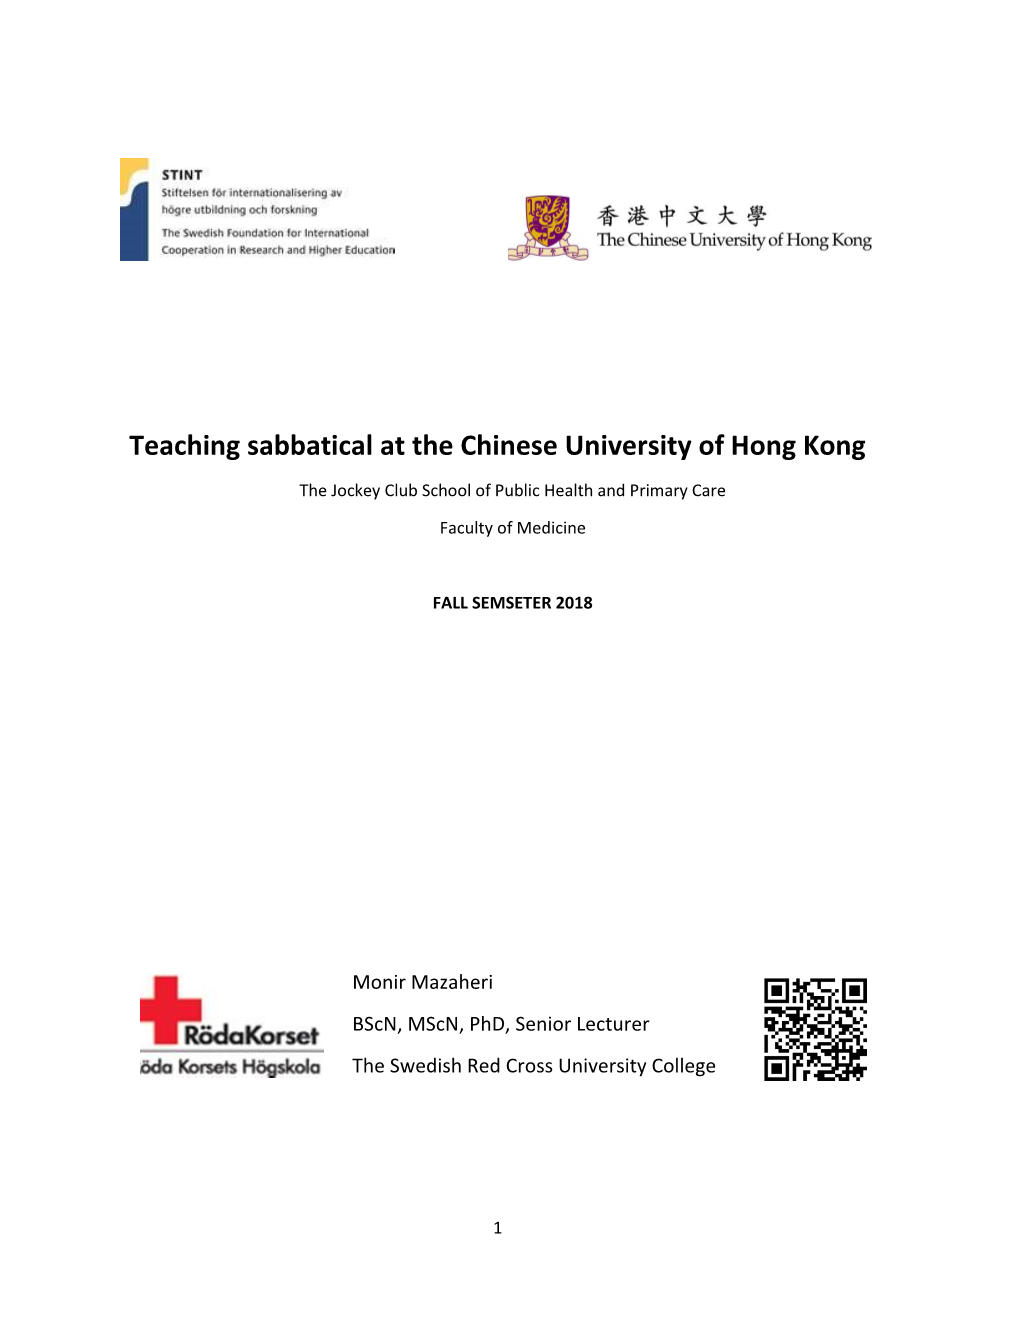 Teaching Sabbatical at the Chinese University of Hong Kong